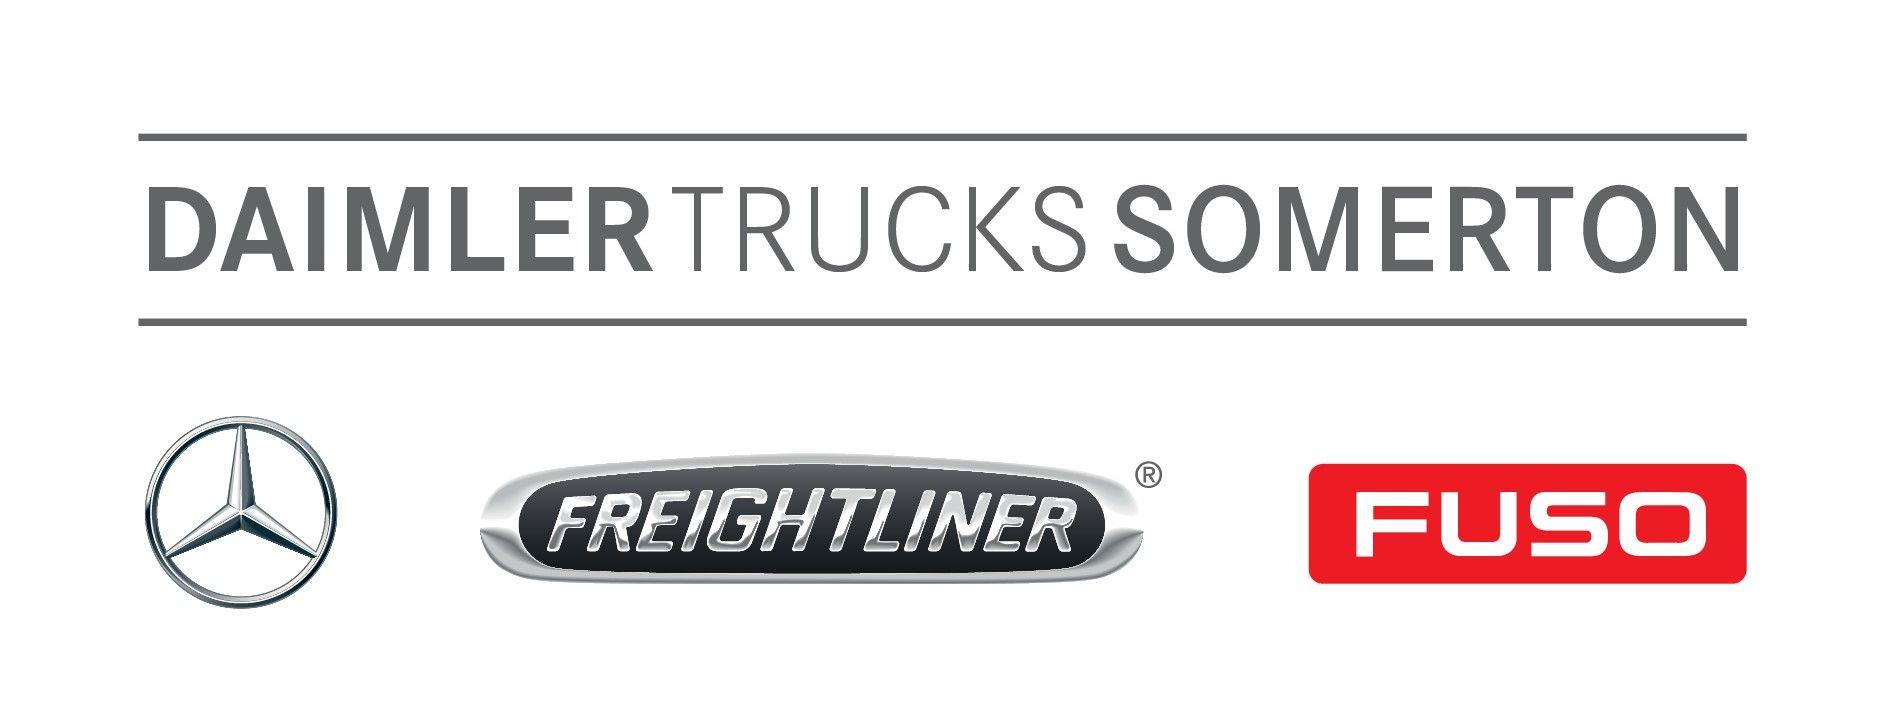 Daimler Trucks Logo - Meet the team | Daimler Trucks Somerton